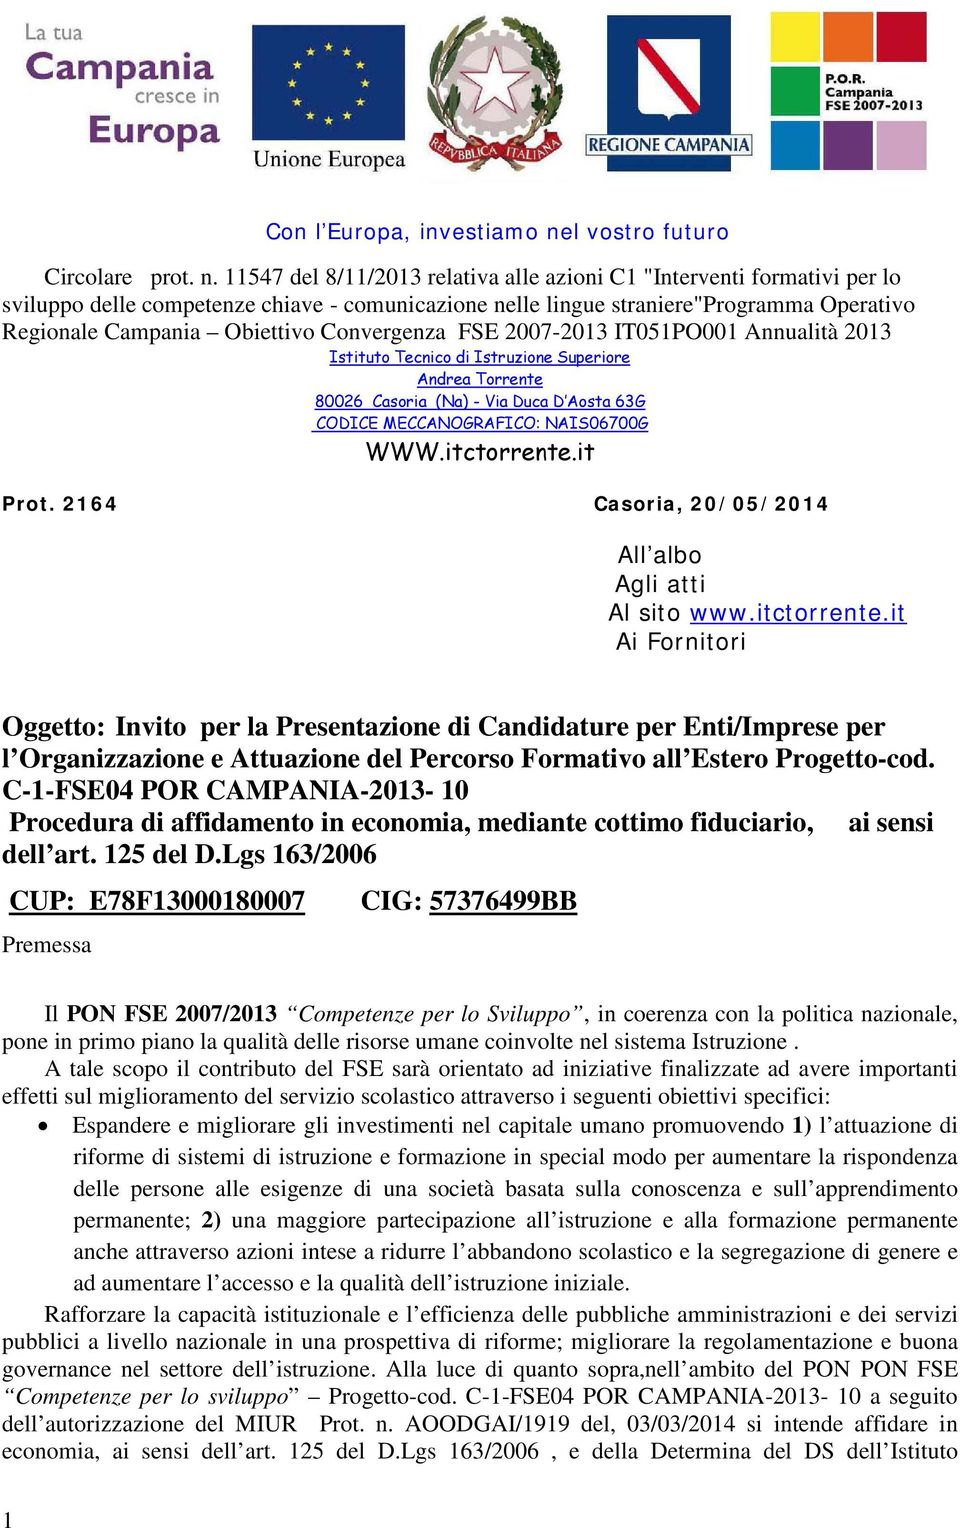 11547 del 8/11/2013 relativa alle azioni C1 "Interventi formativi per lo sviluppo delle competenze chiave - comunicazione nelle lingue straniere"programma Operativo Regionale Campania Obiettivo